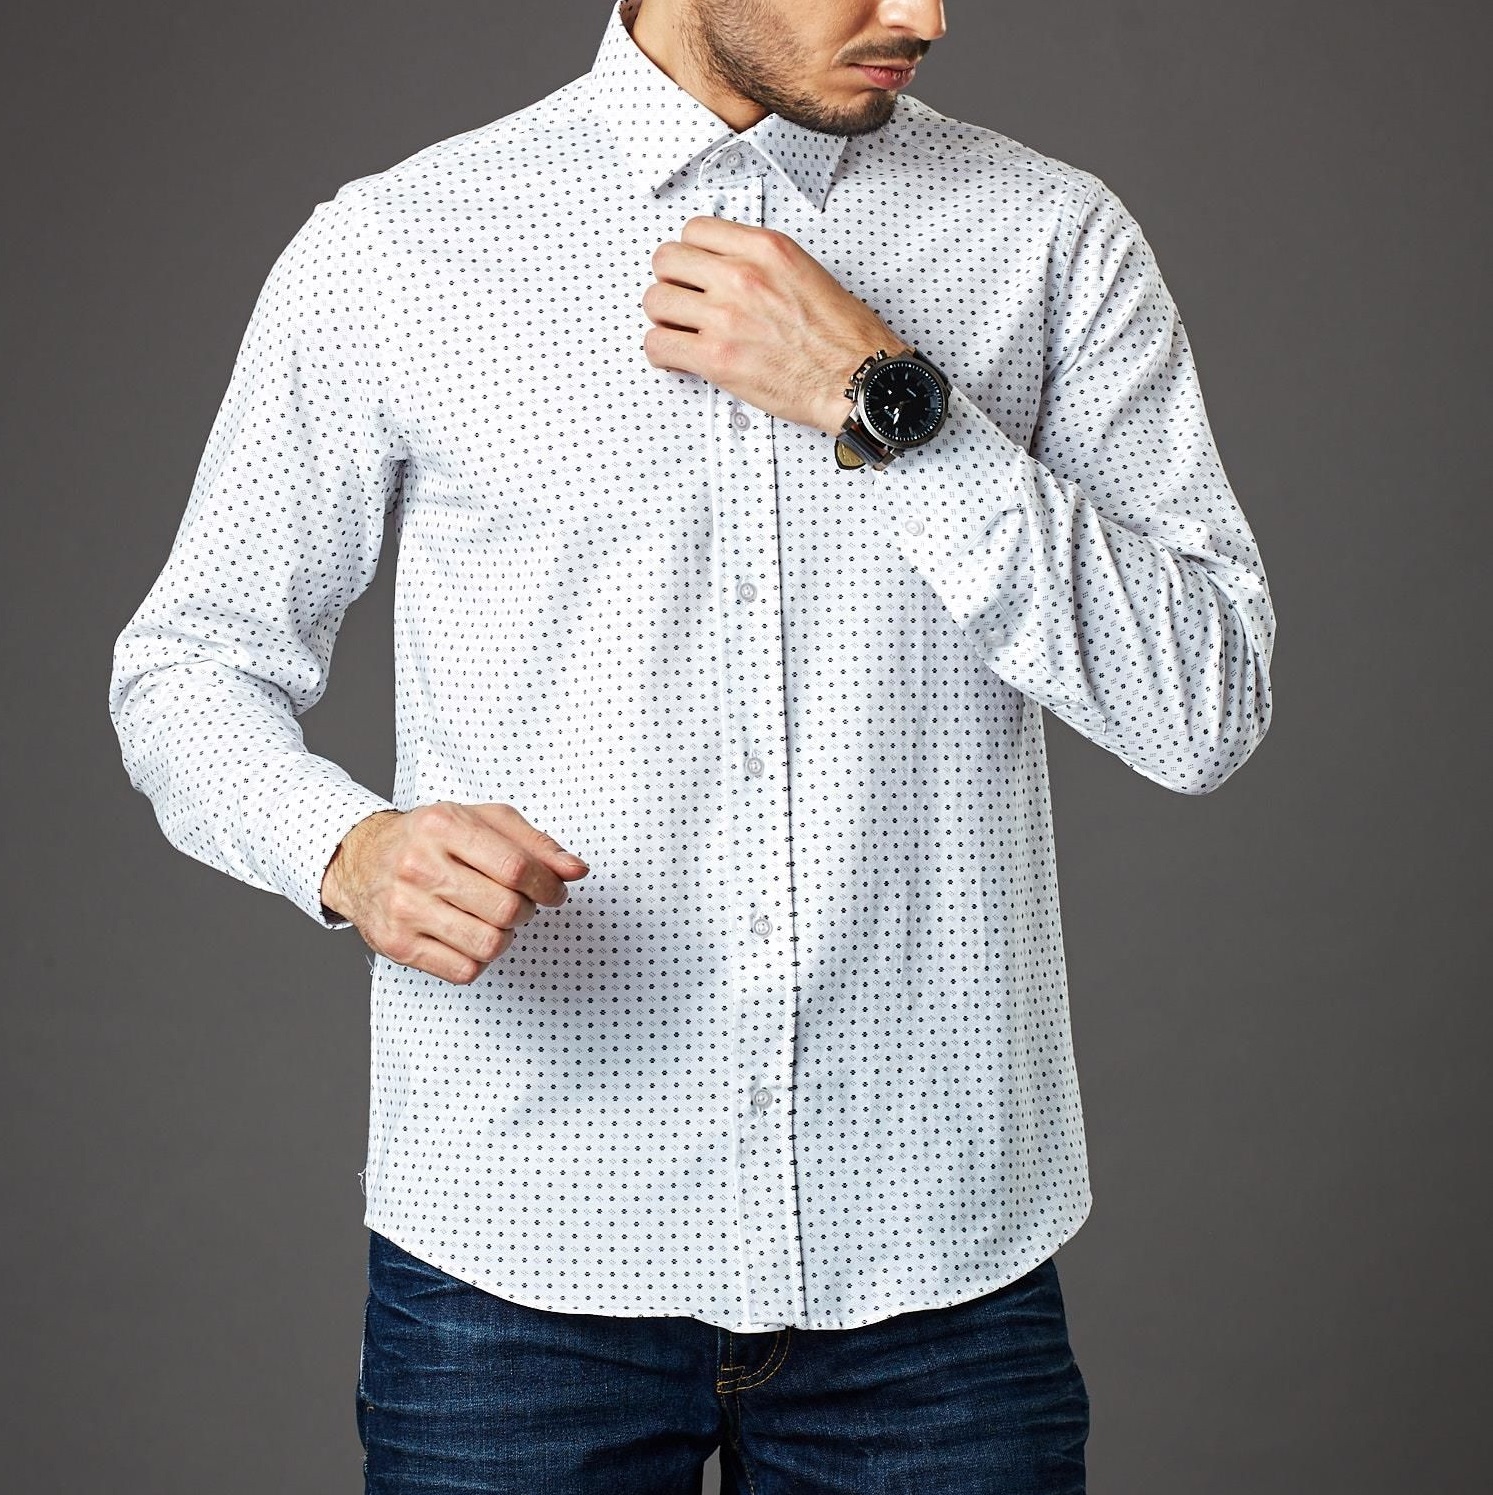 Modne koszule męskie – sprawdź nasz przegląd